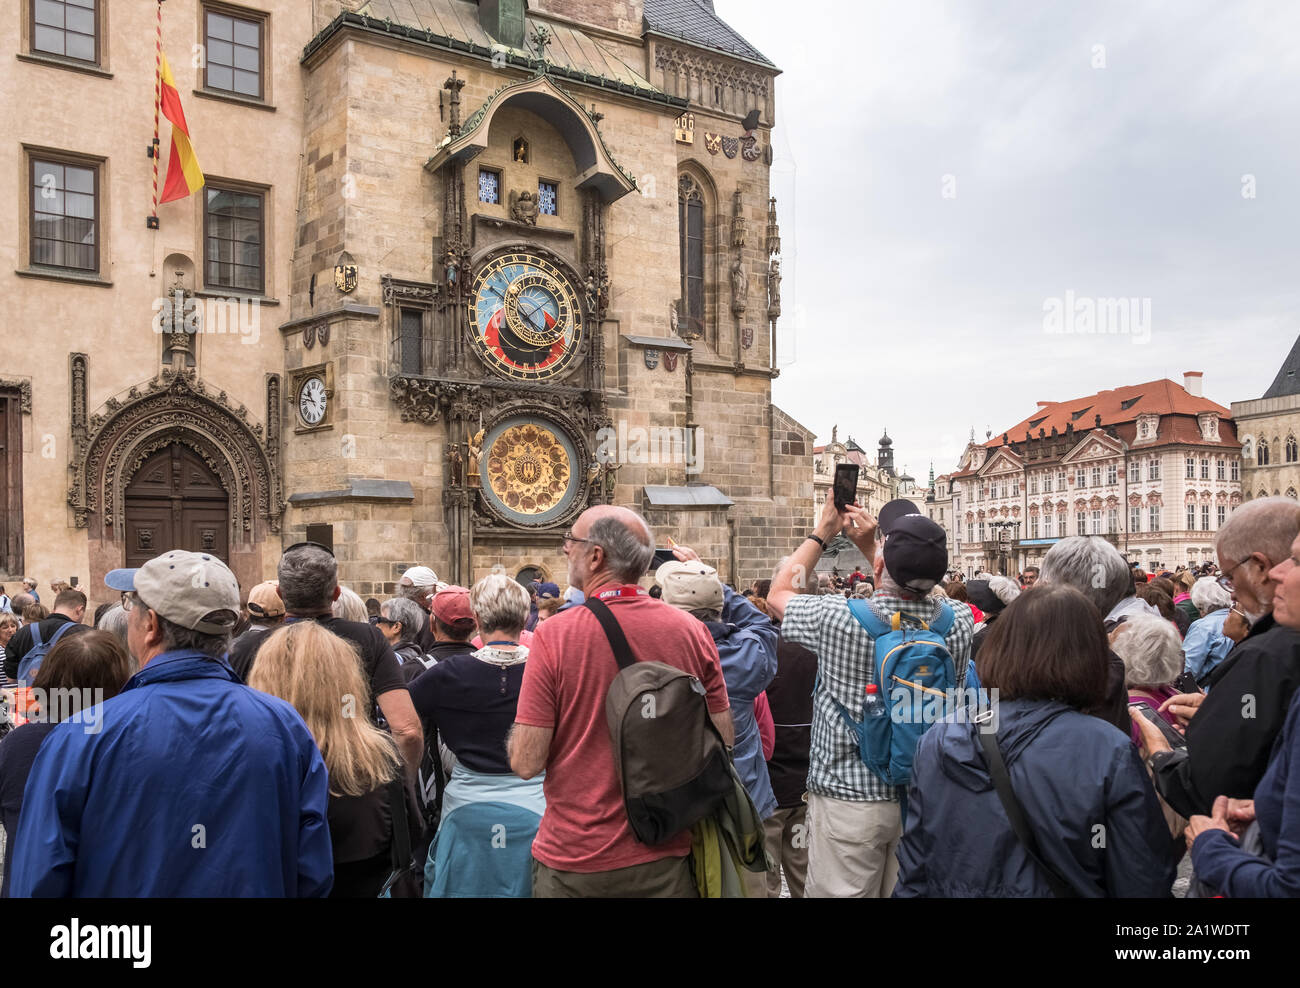 Touristen Publikum bei den mittelalterlichen Astronomischen Uhr, eine beliebte Touristenattraktion auf dem Altstädter Ring, Prag, Tschechische Republik. Stockfoto